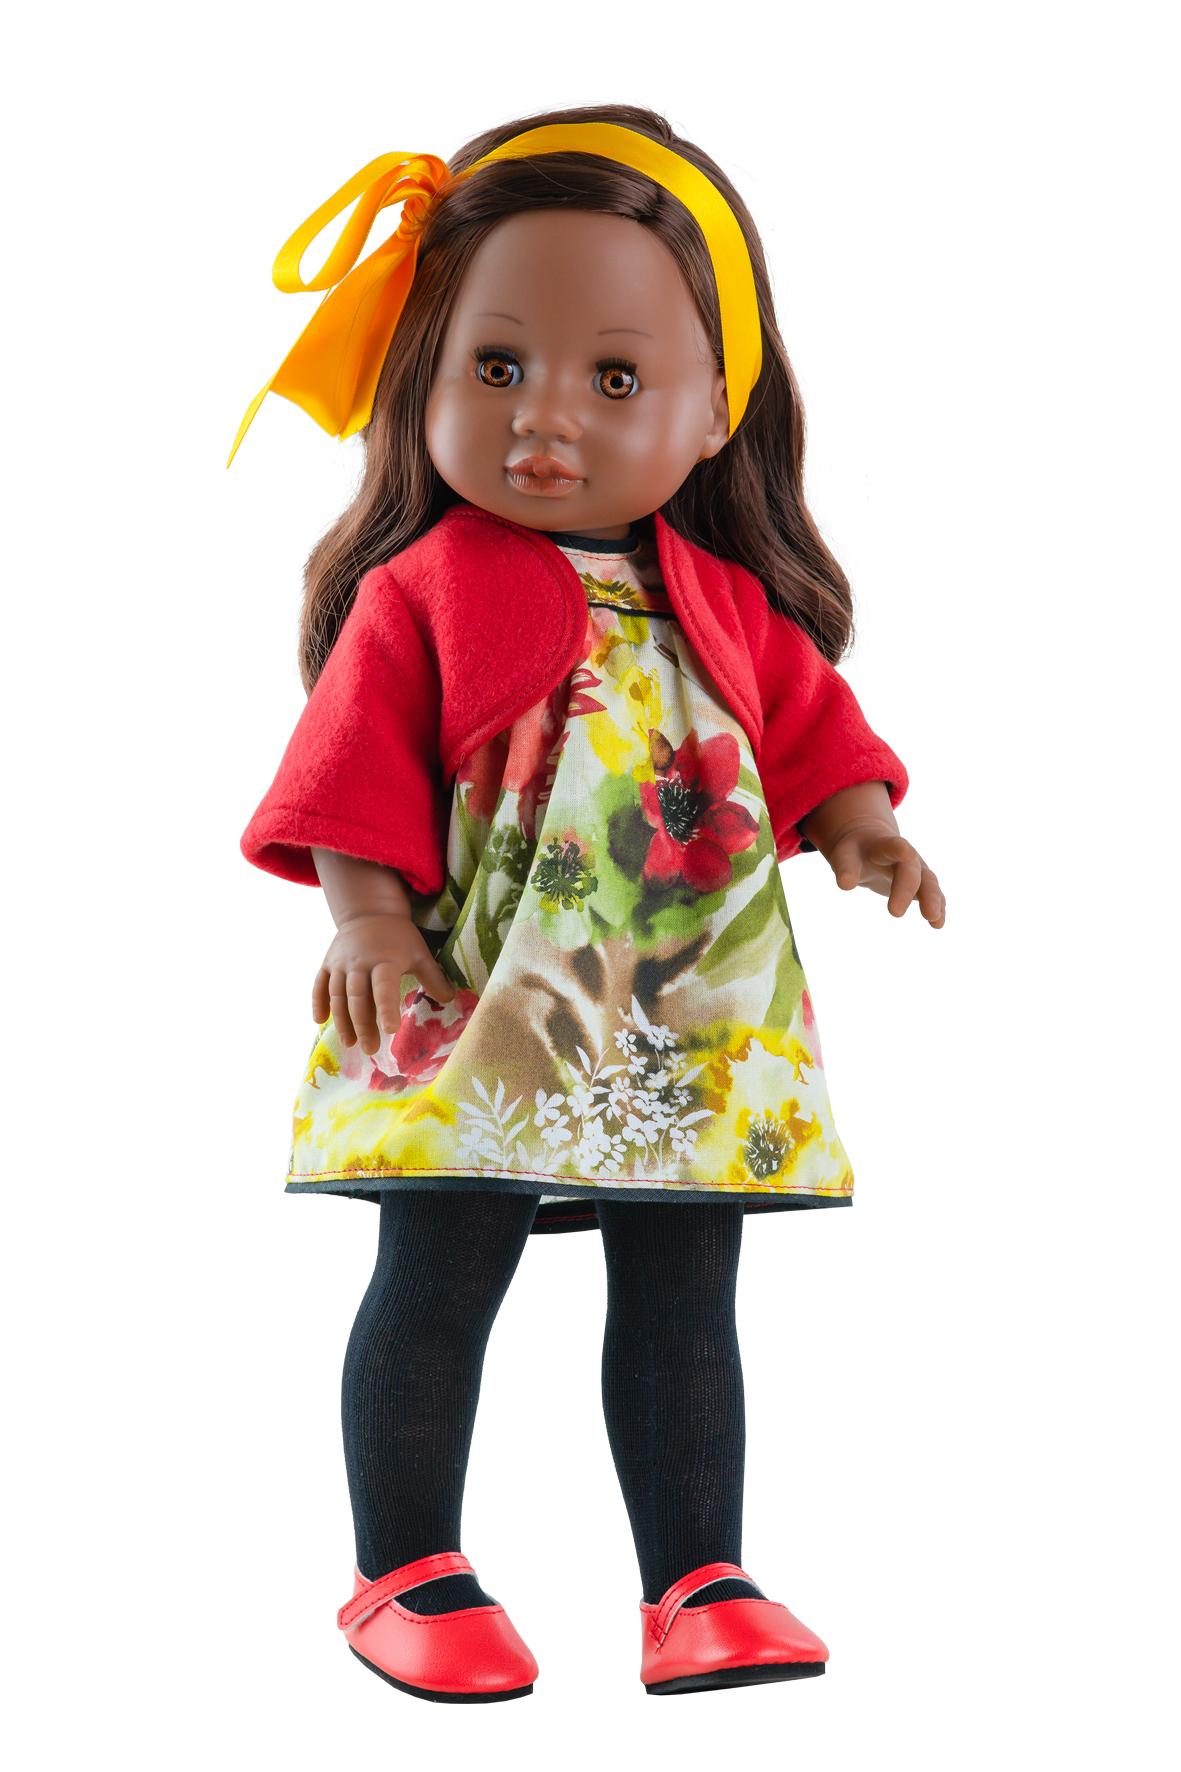 Voňavá panenka Amor se žlutou mašlí od firmy Paola Reina ze Španělska